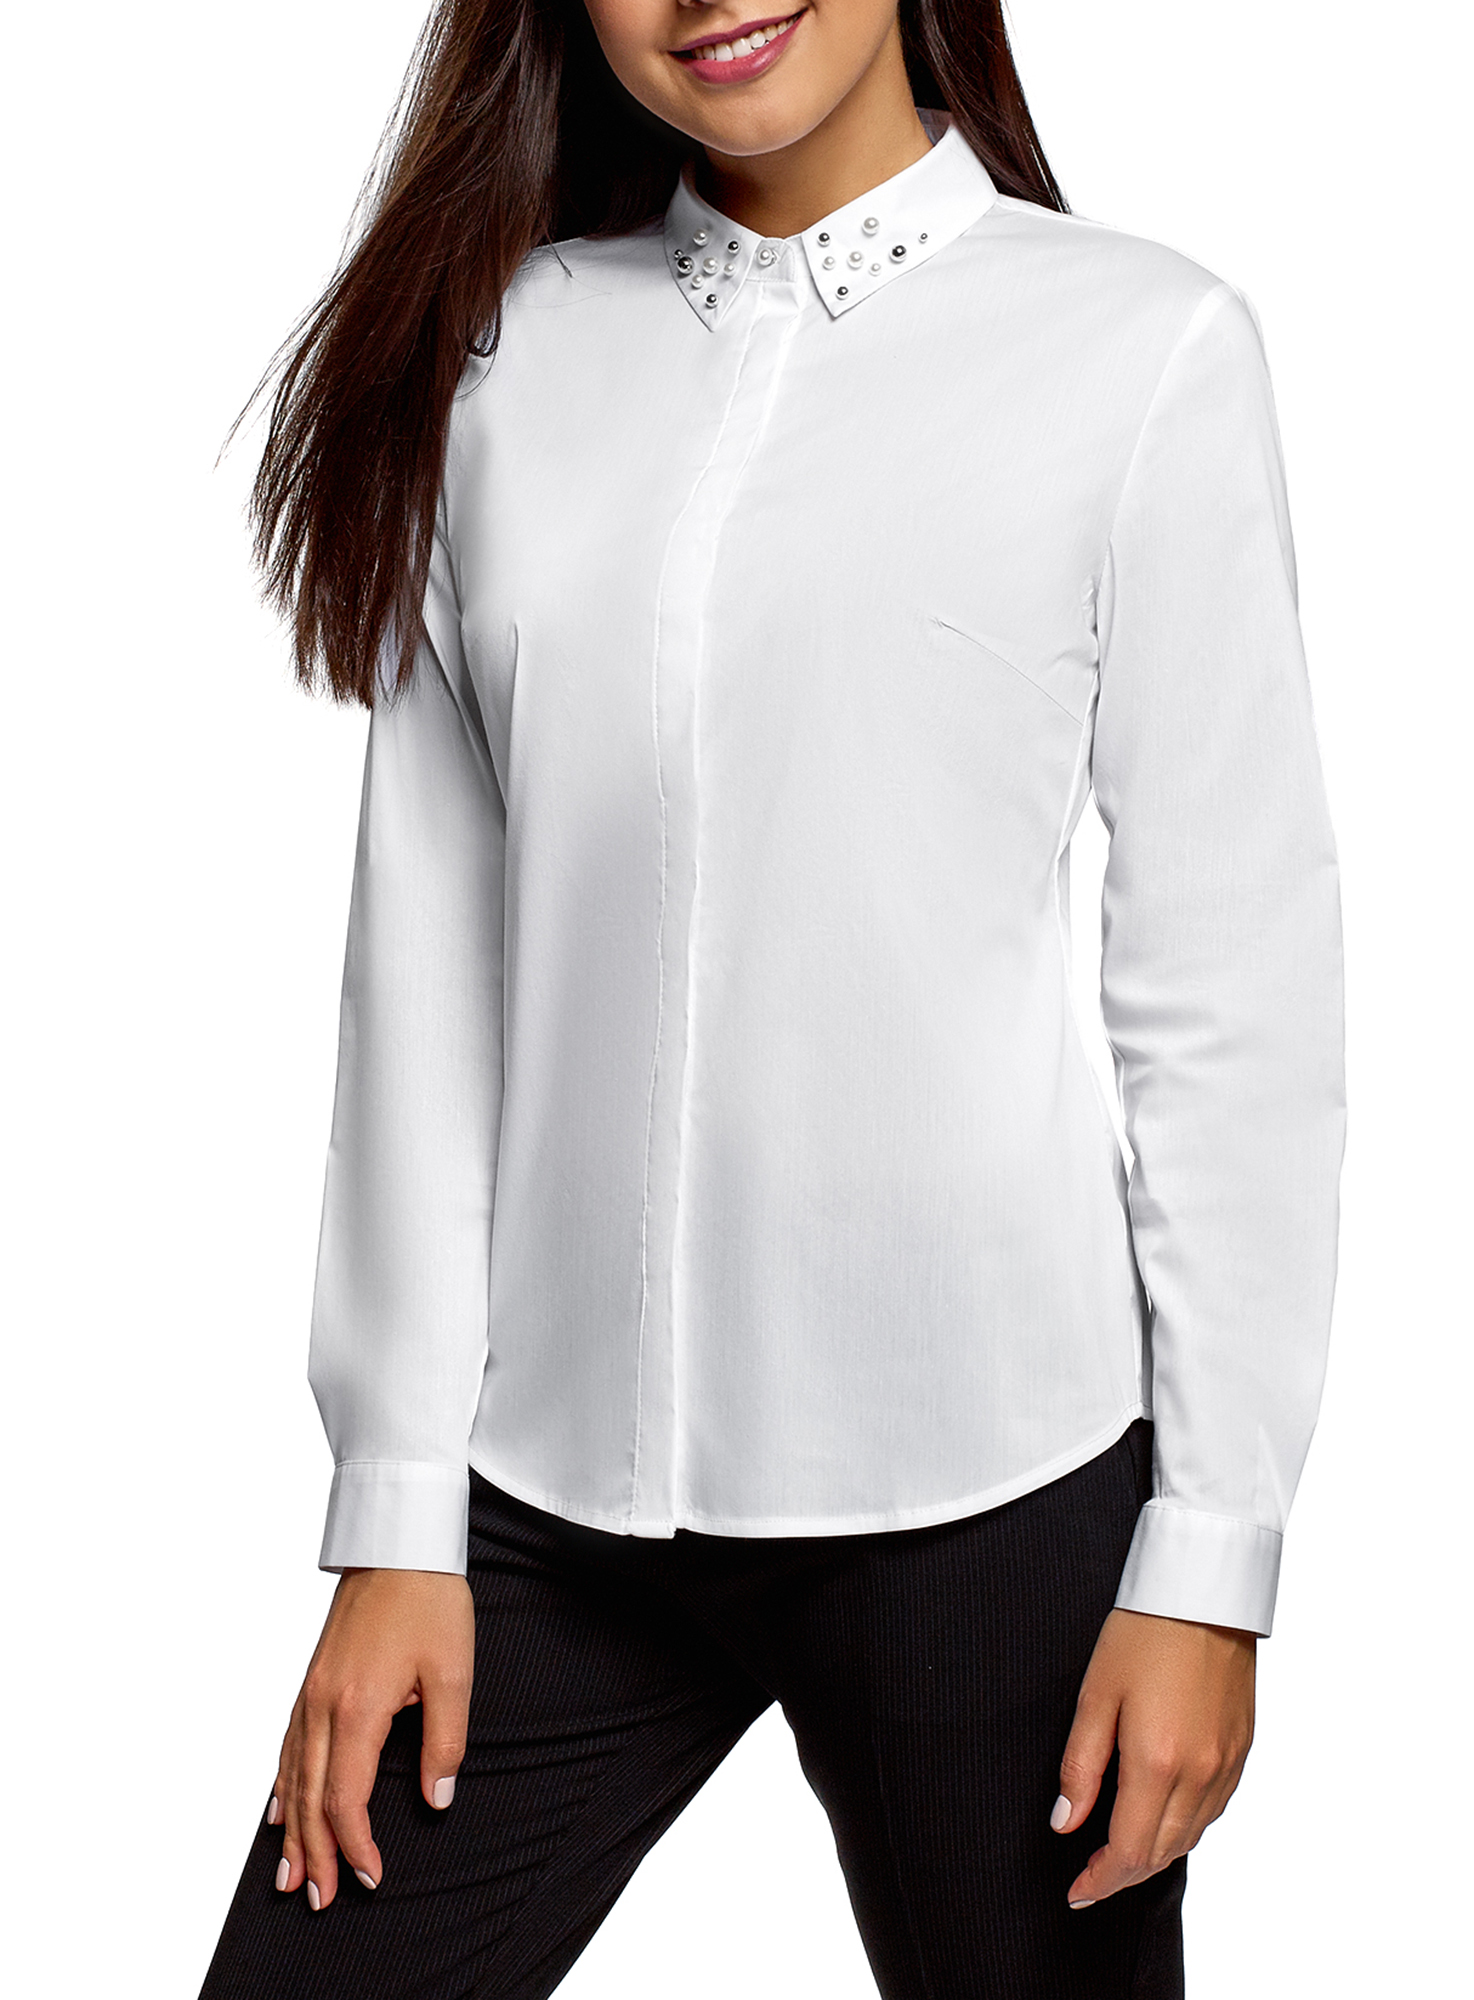 Озон белая блузка. Белая блузка. Рубашка женская. Блузка с длинным рукавом. Белая блузка женская.